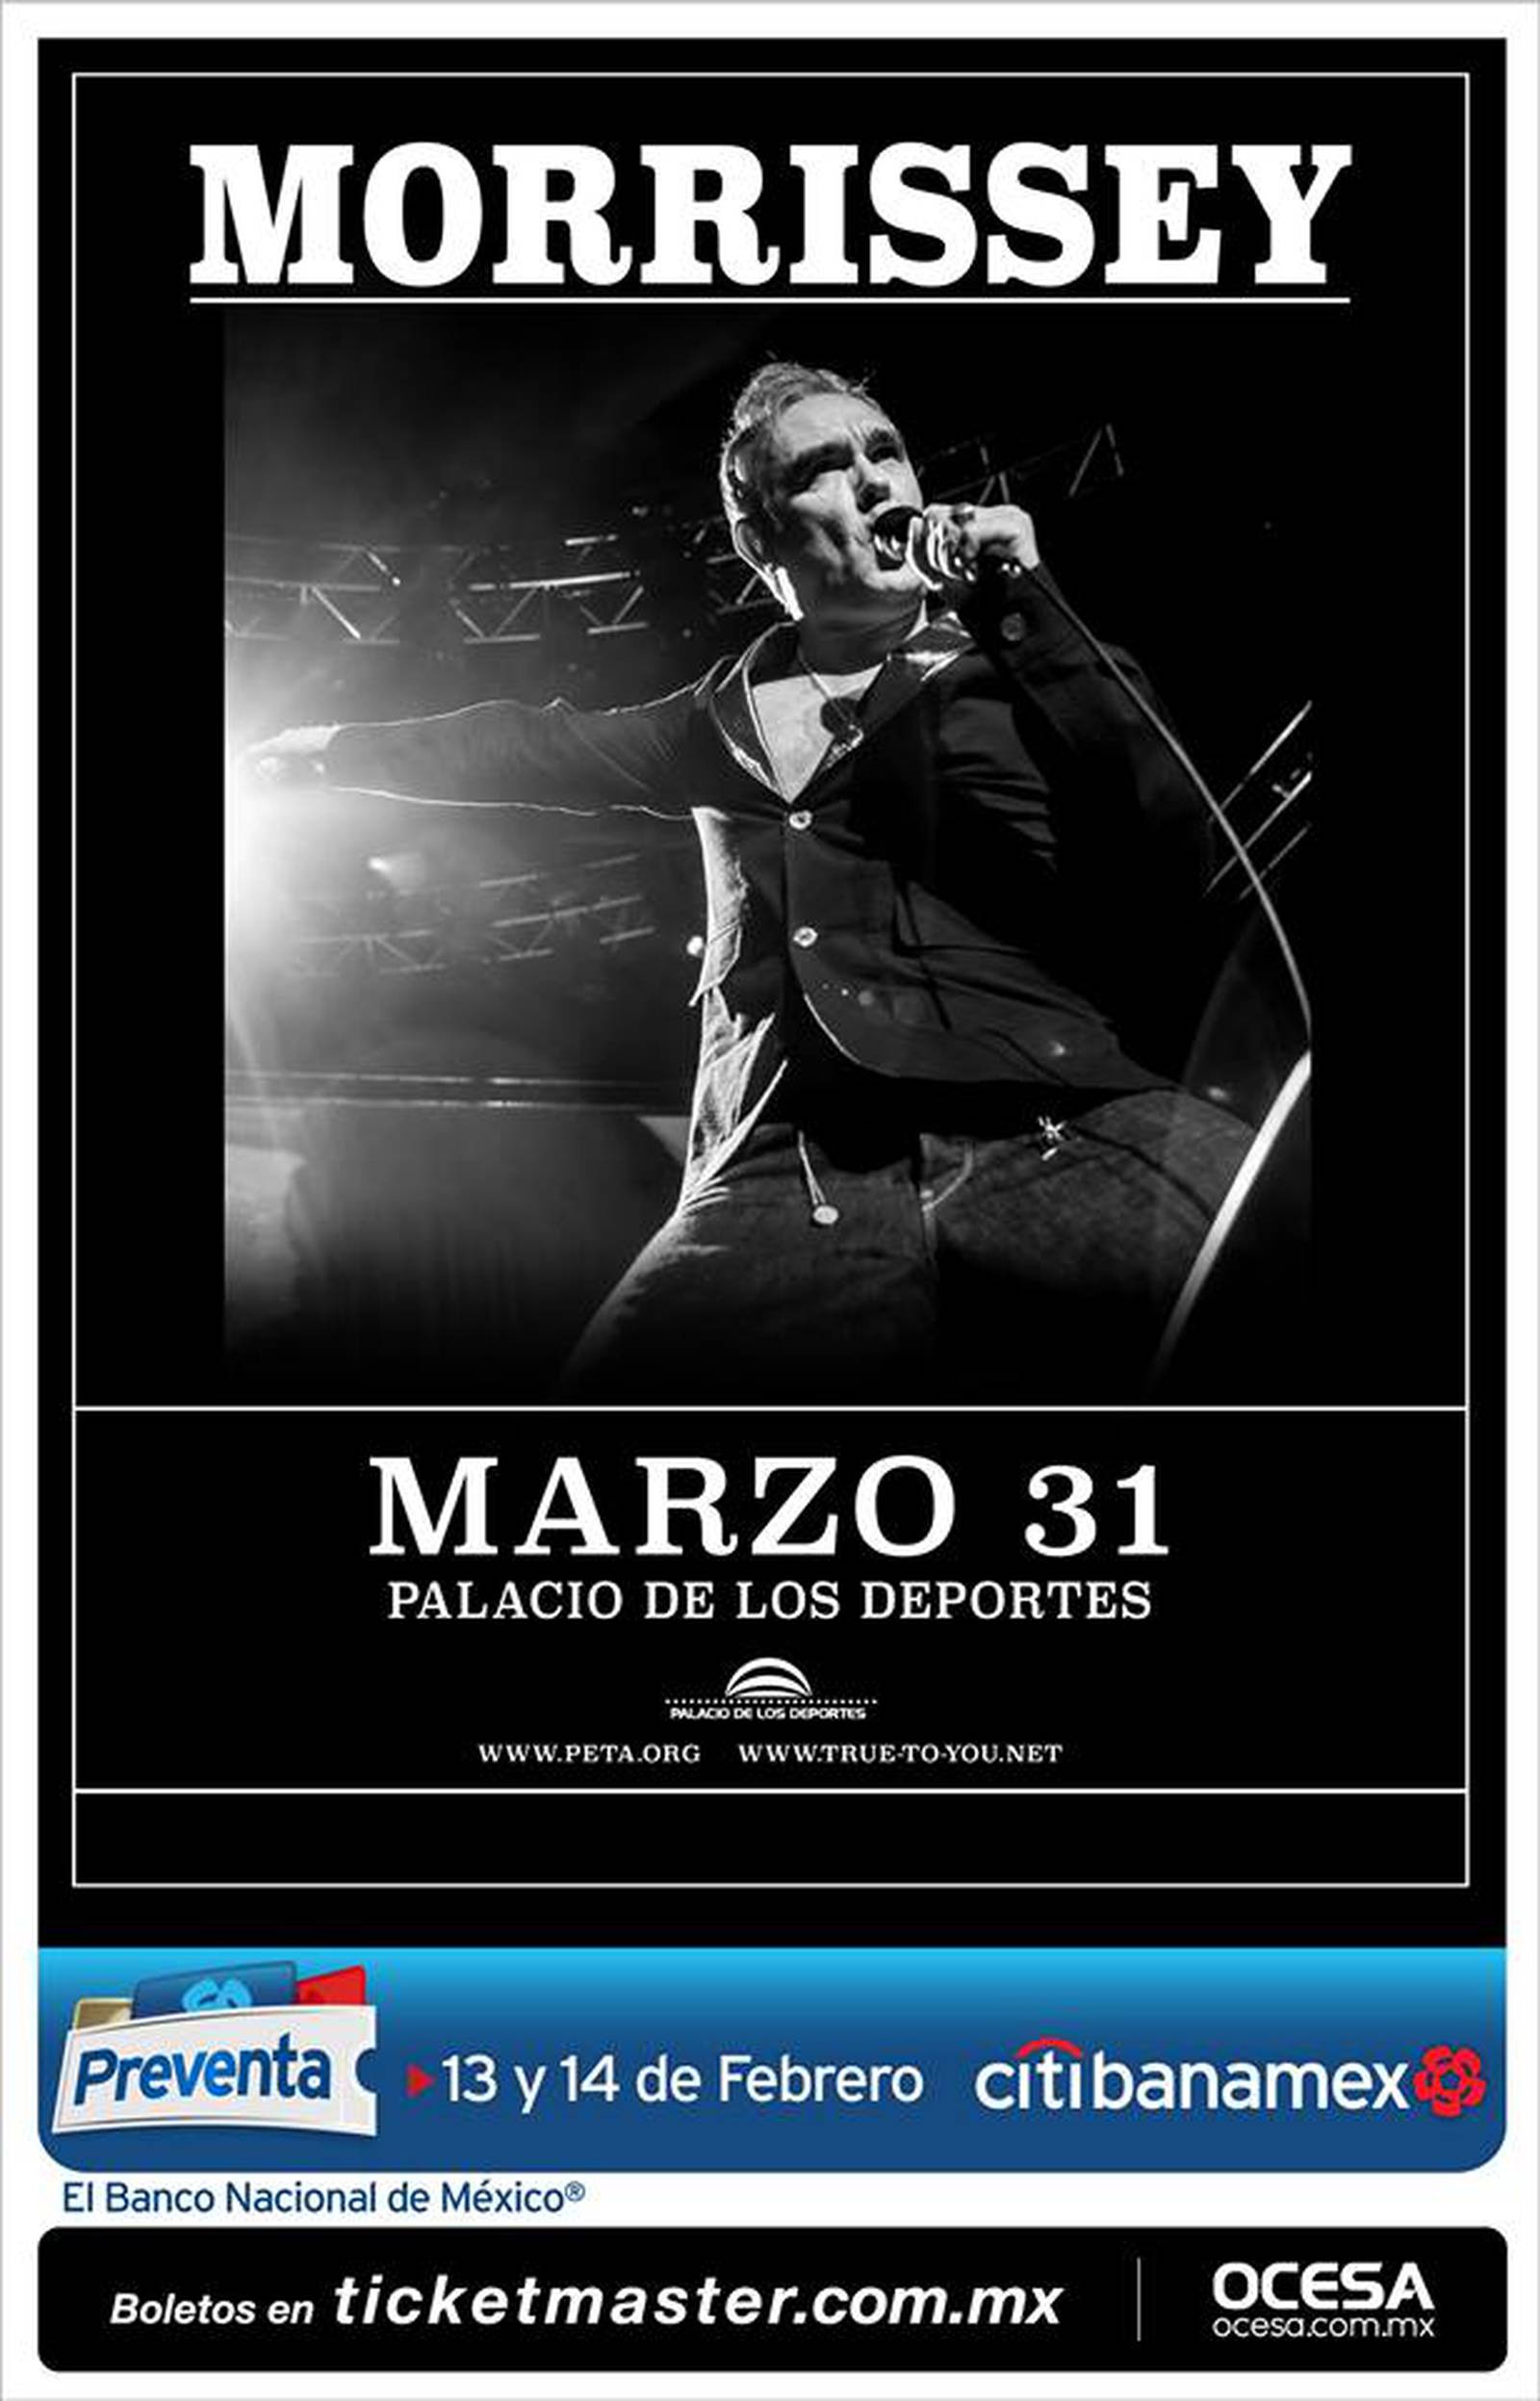 Fechas y precios de conciertos de Morrissey en México Publimetro México